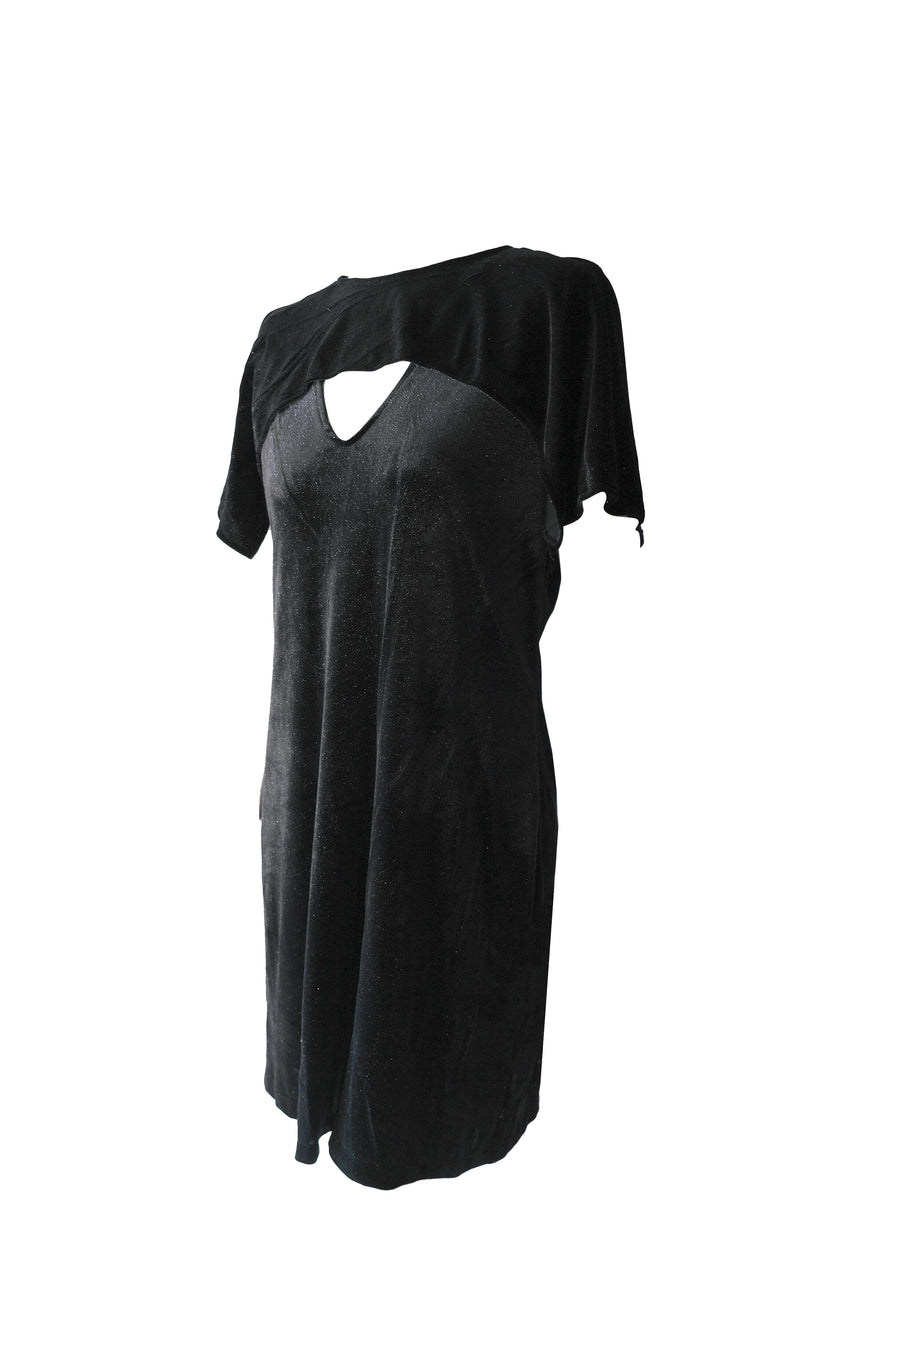 Velvet Cape Dress - Sparkle Black